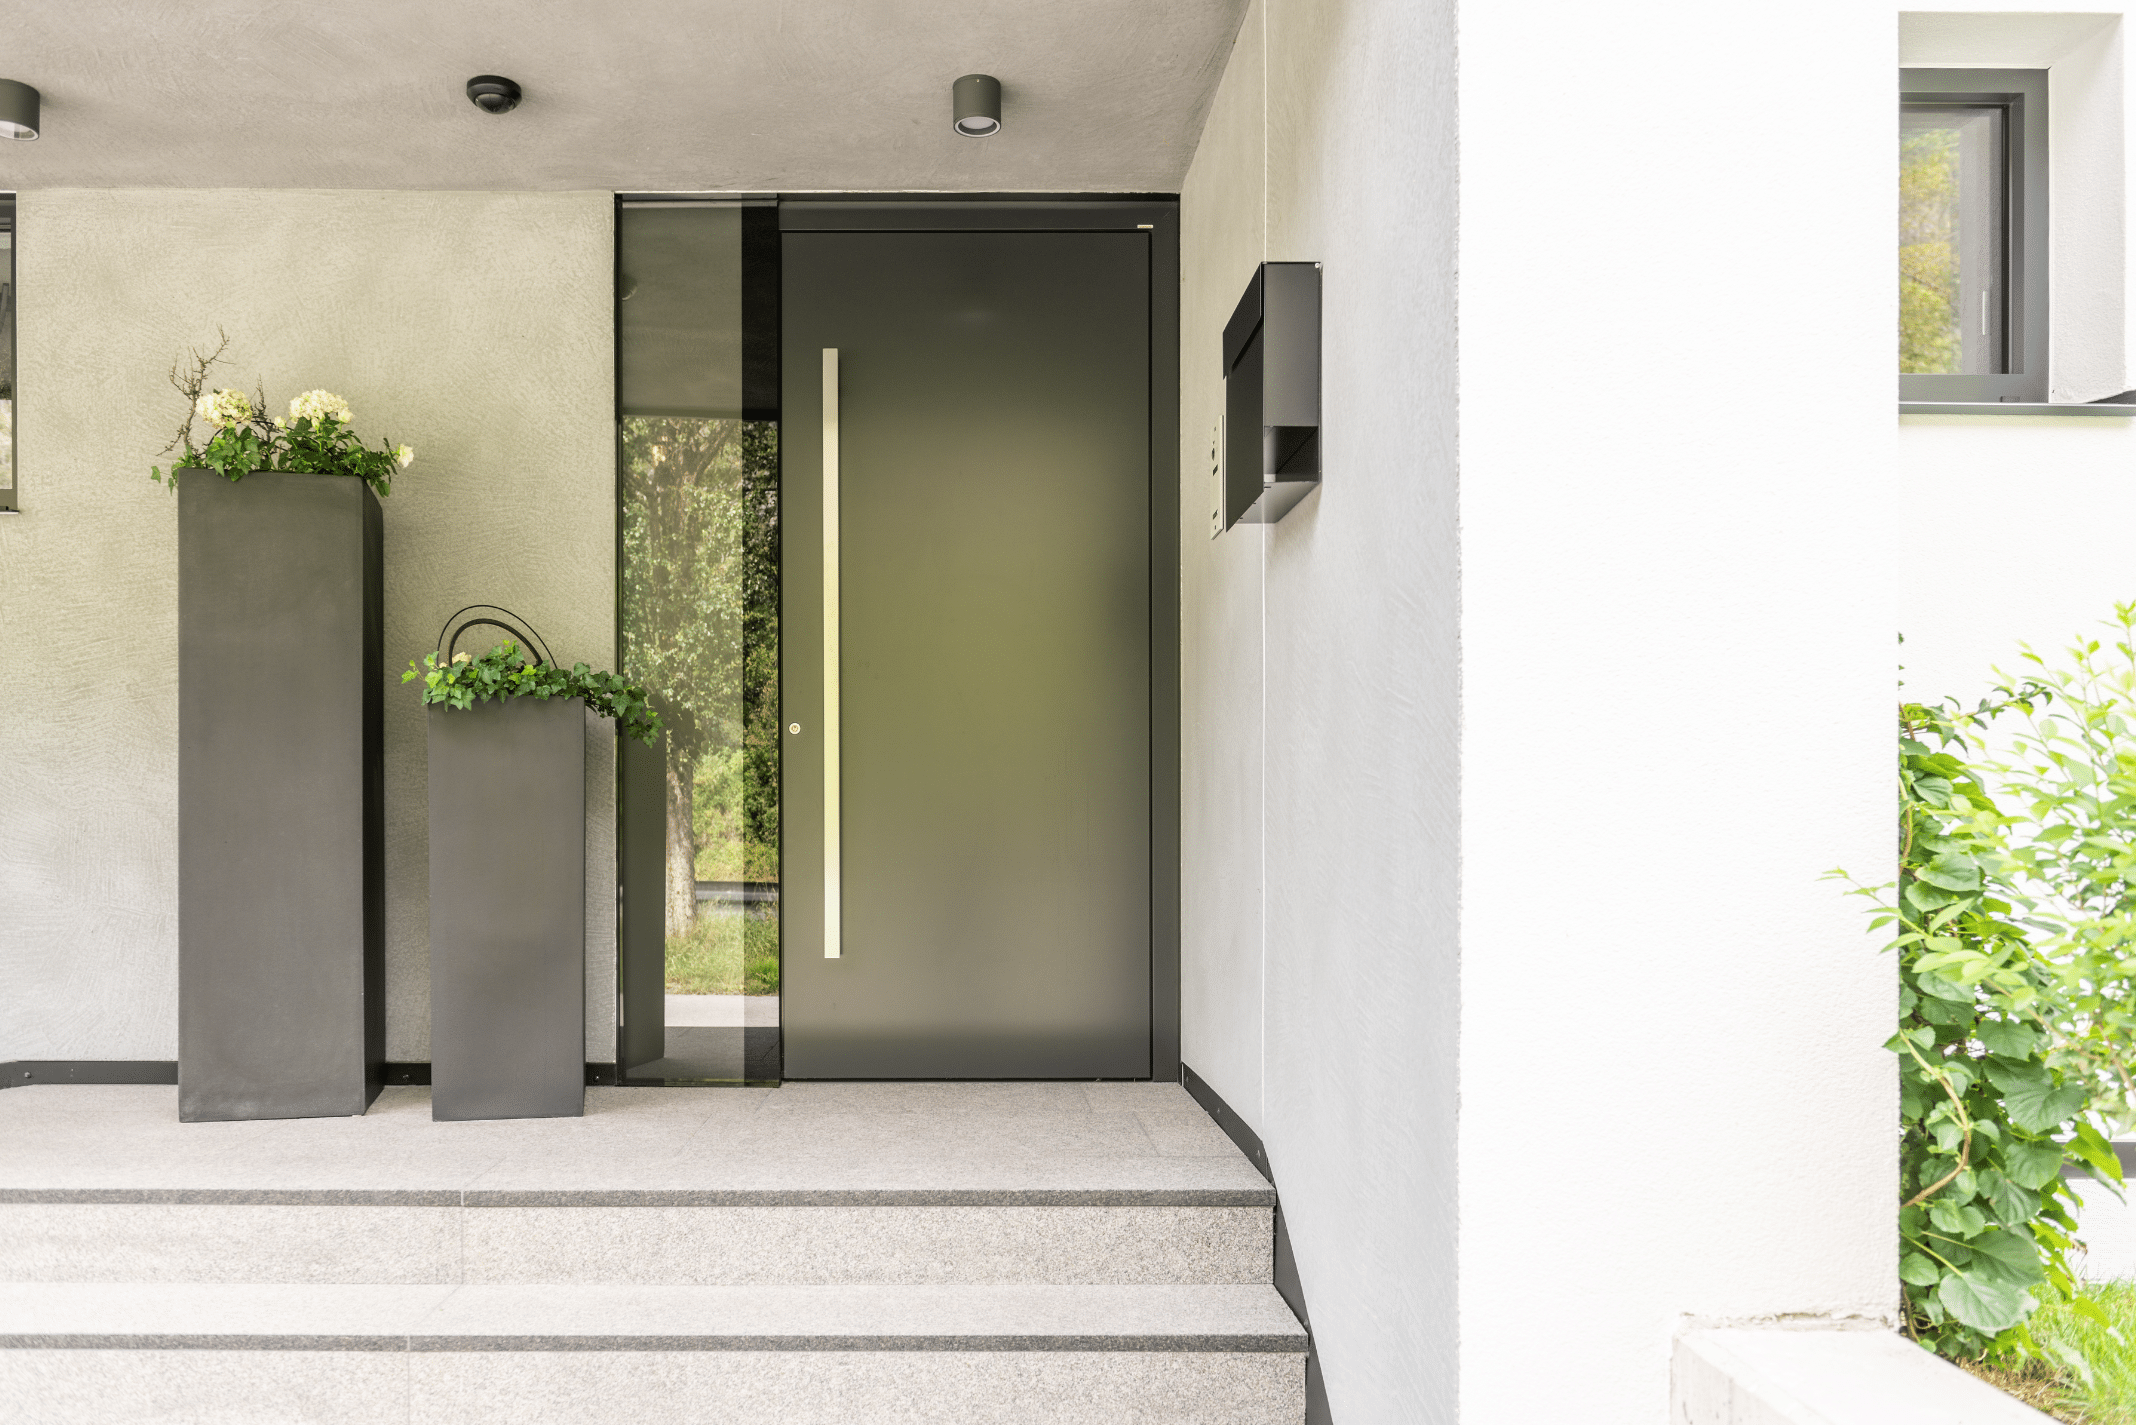 Internorm zeigt einen Hauseingang mit einer schwarzen Haustüre mit silbernem Griff und Fenster mit großen, eckigen Blumentöpfen daneben.